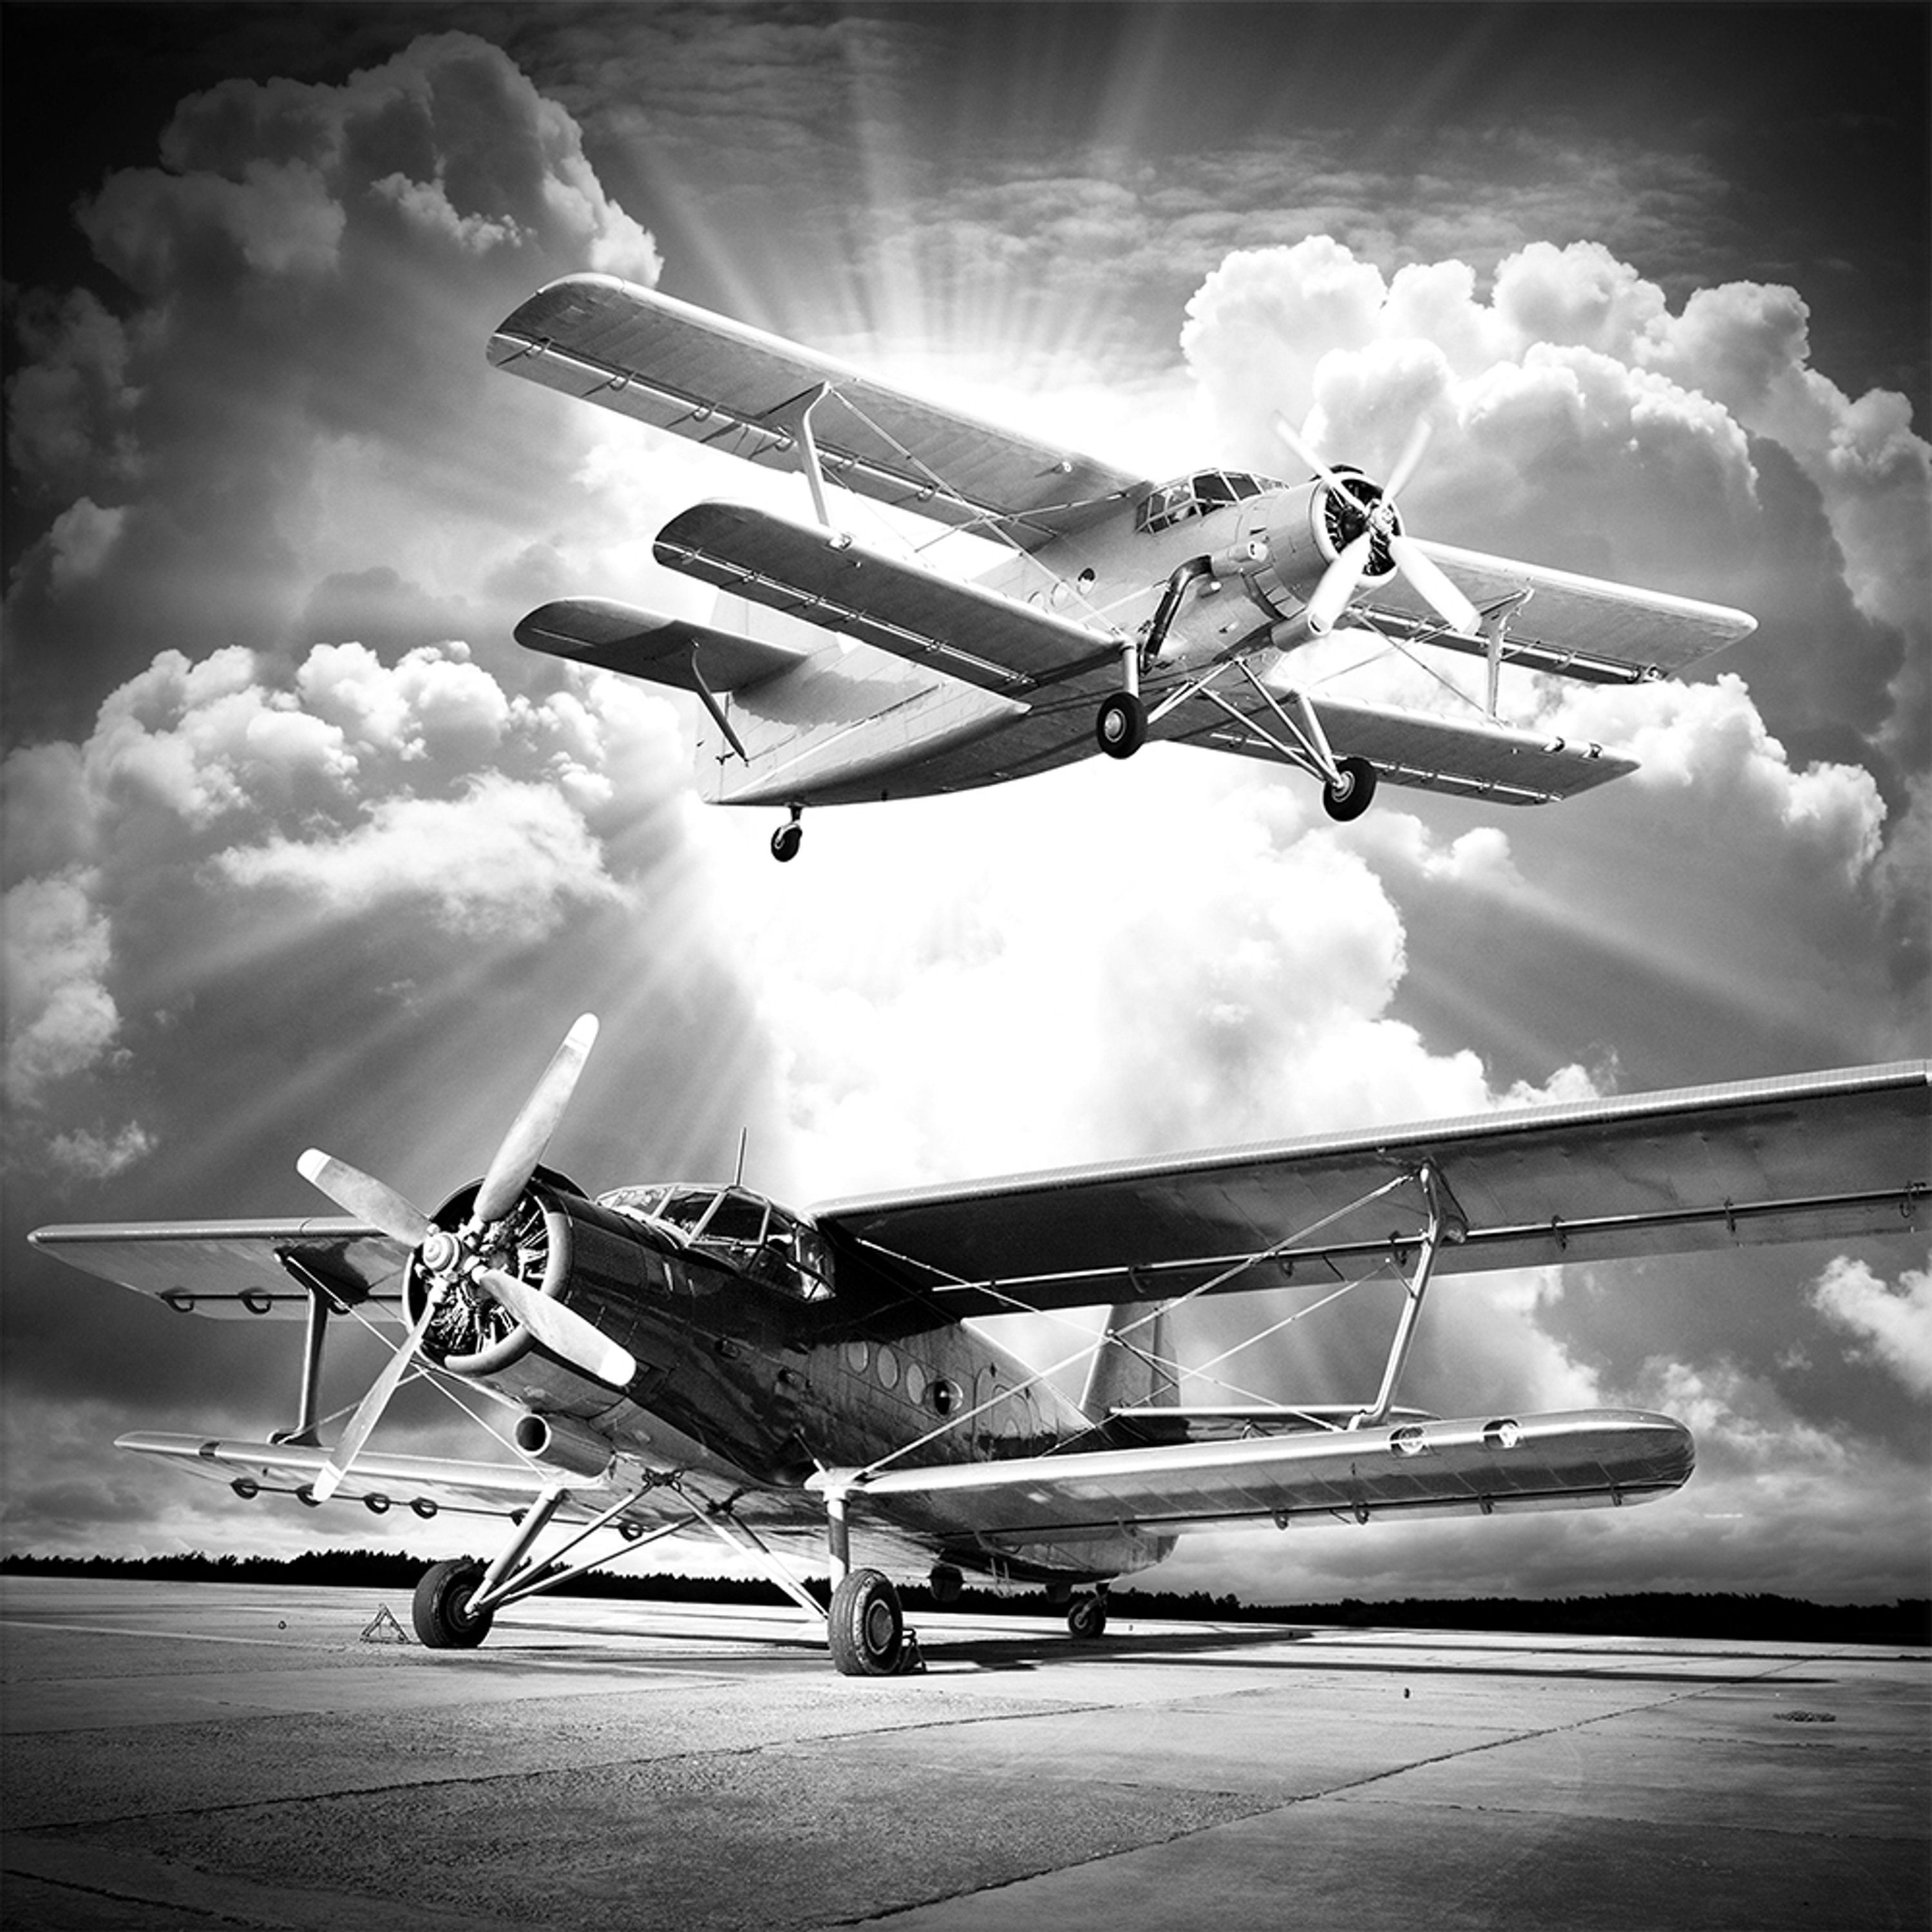 Foto: Glasbild Bild schwarz-weiß Flugzeug 30x30cm Vintage, Glasbild Flugzeug schwarz-weiß artissimo Foto